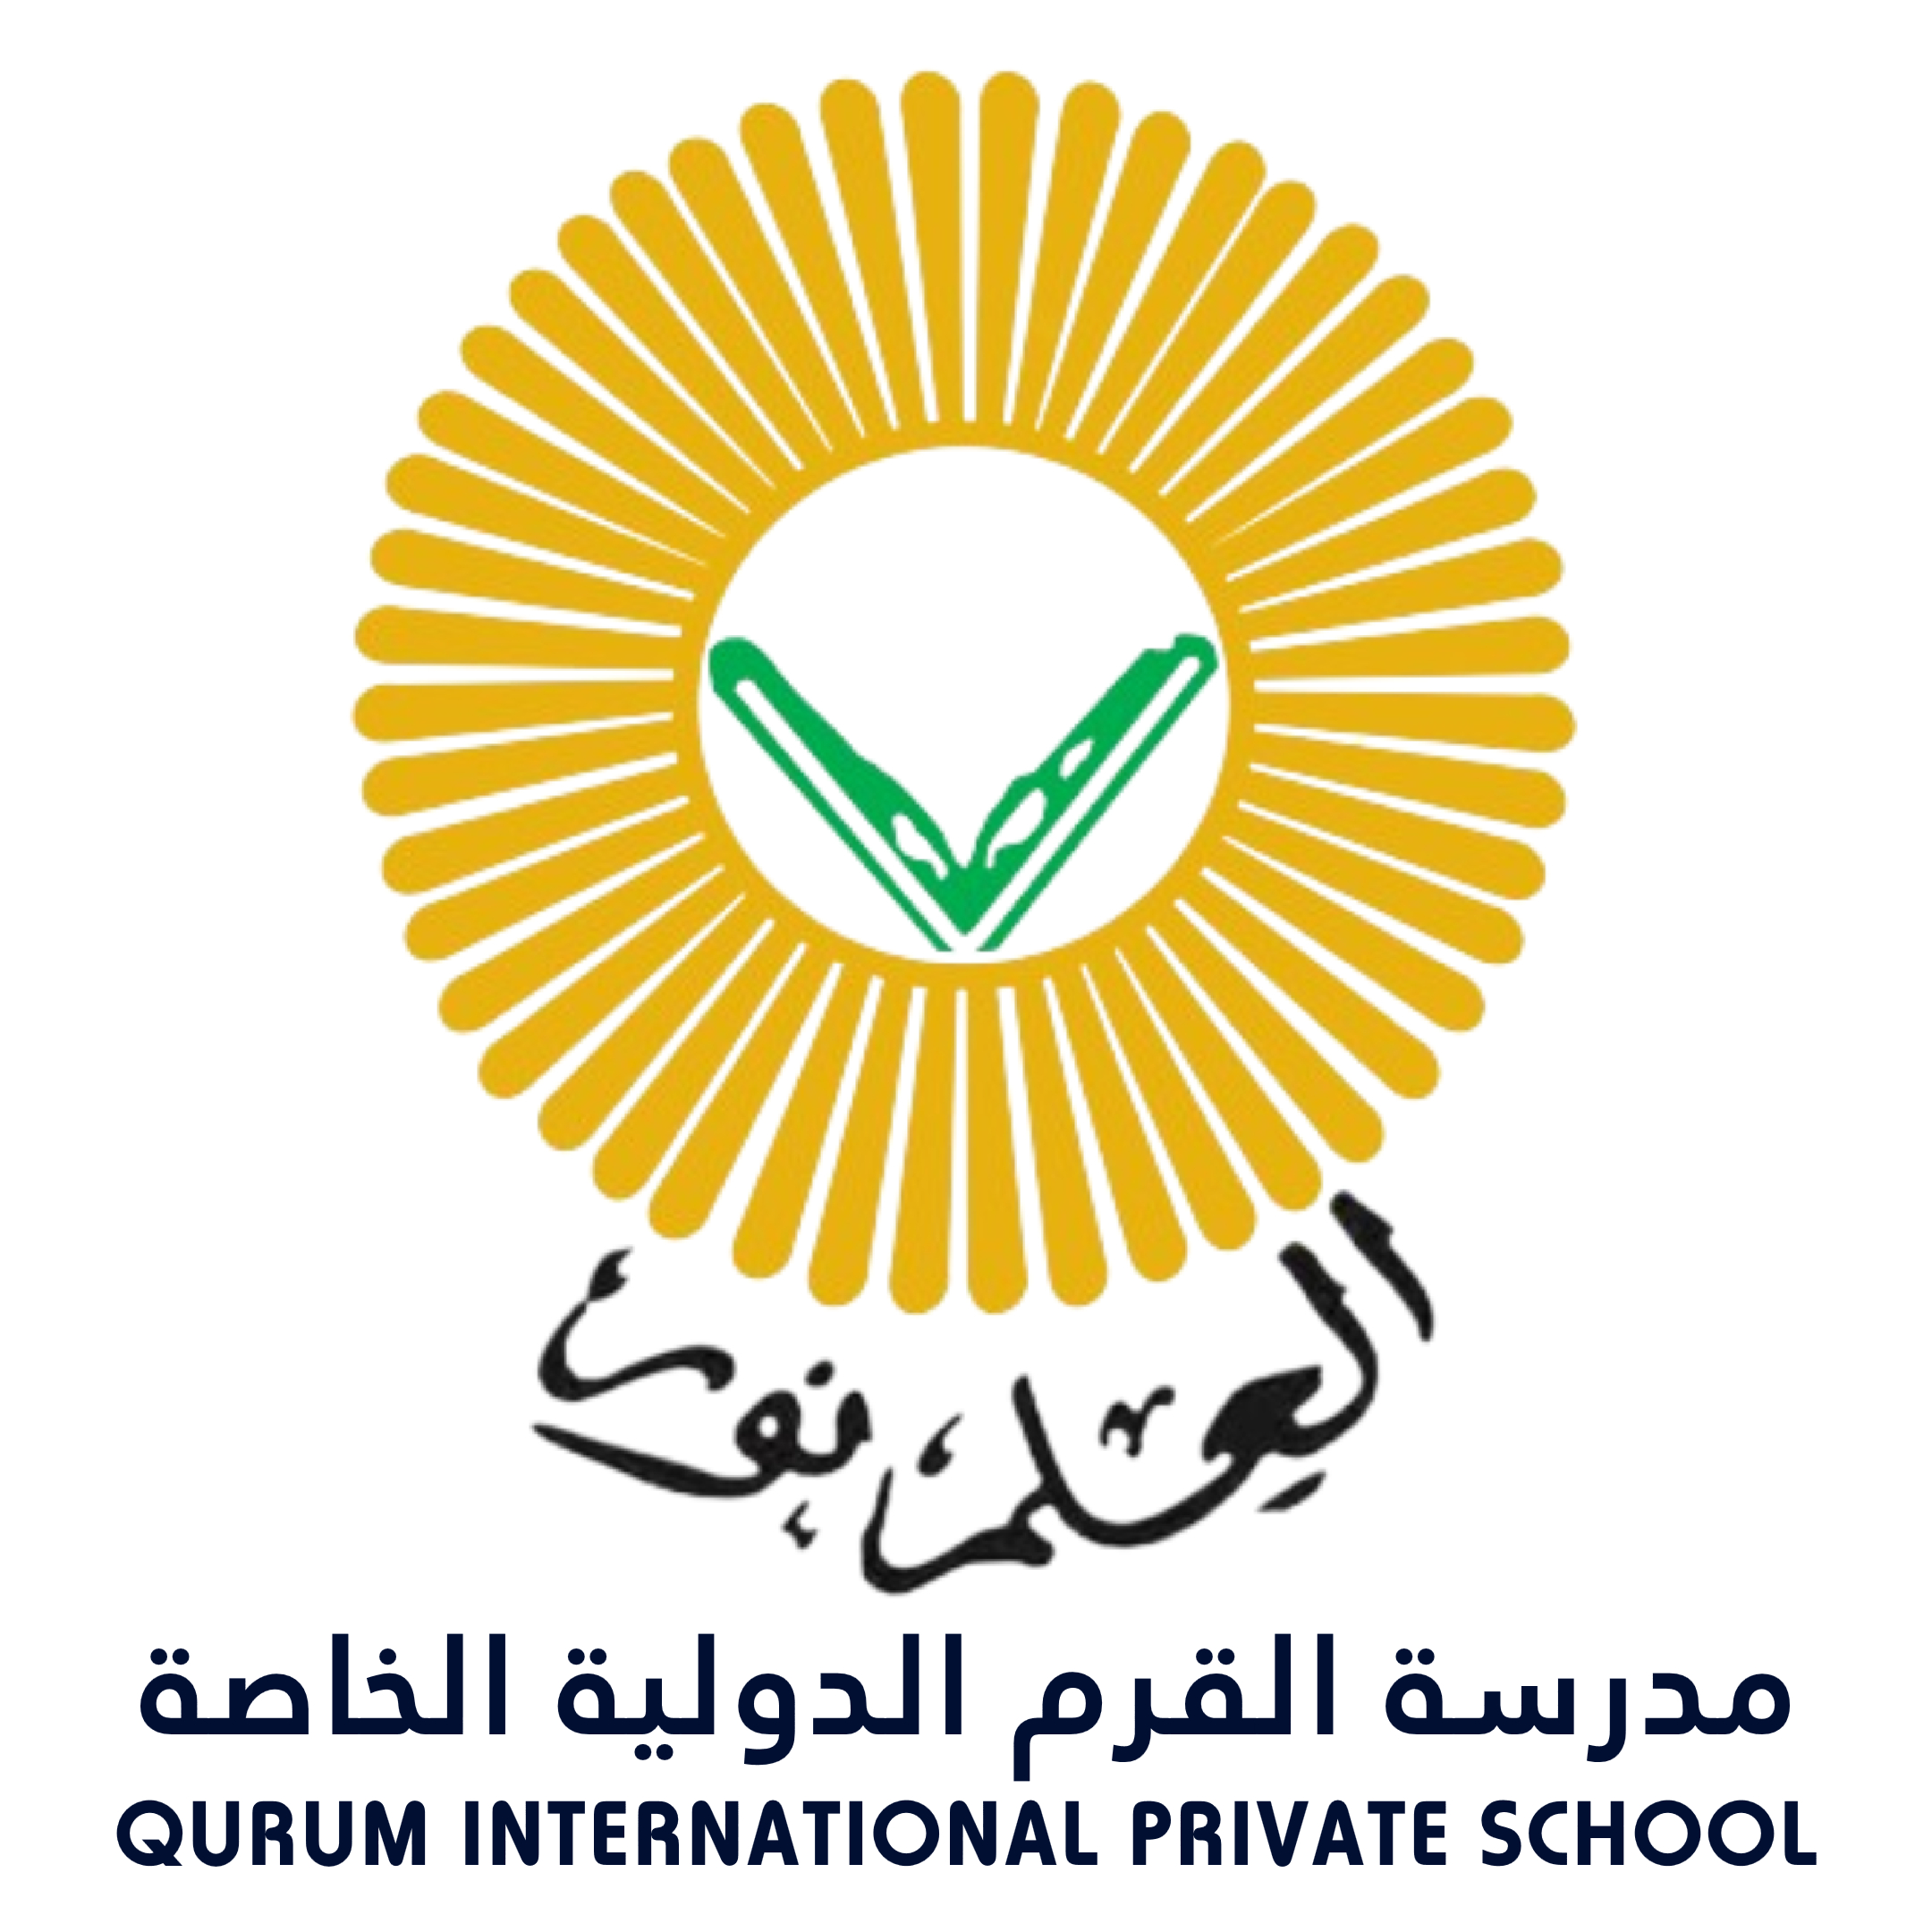 Qurum International Private School